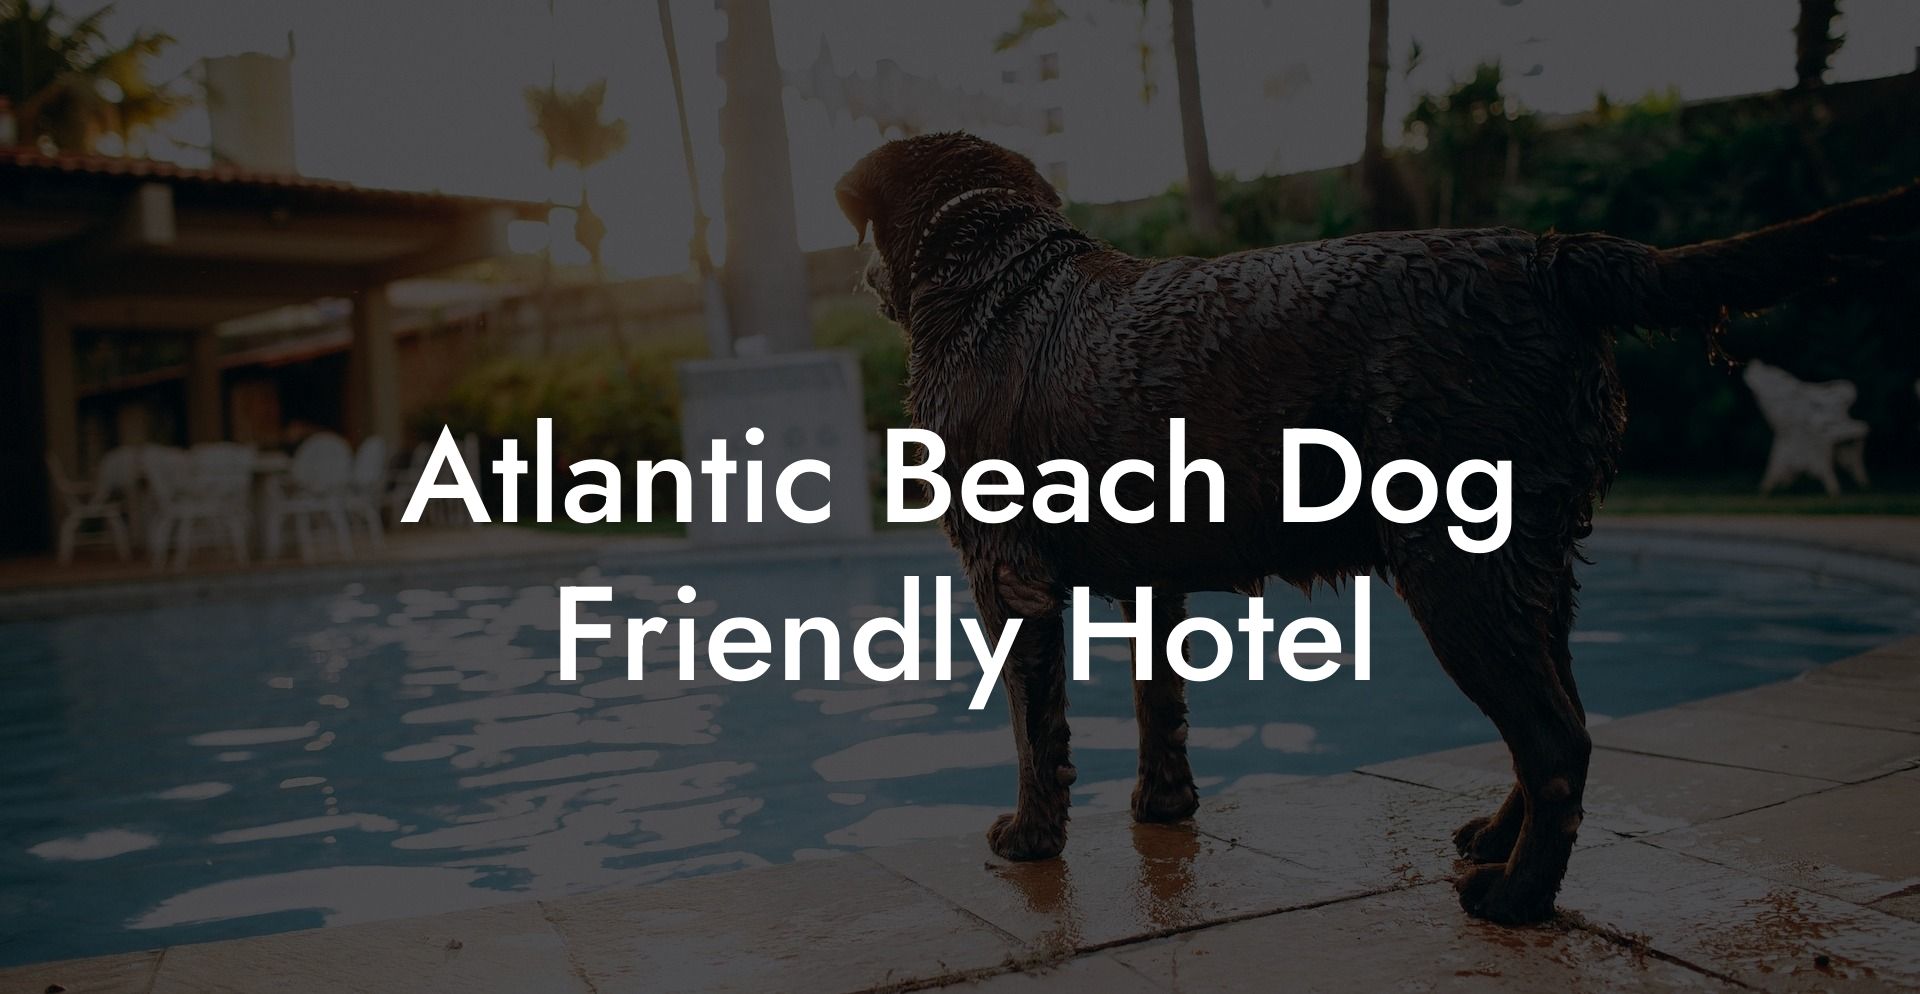 Atlantic Beach Dog Friendly Hotel